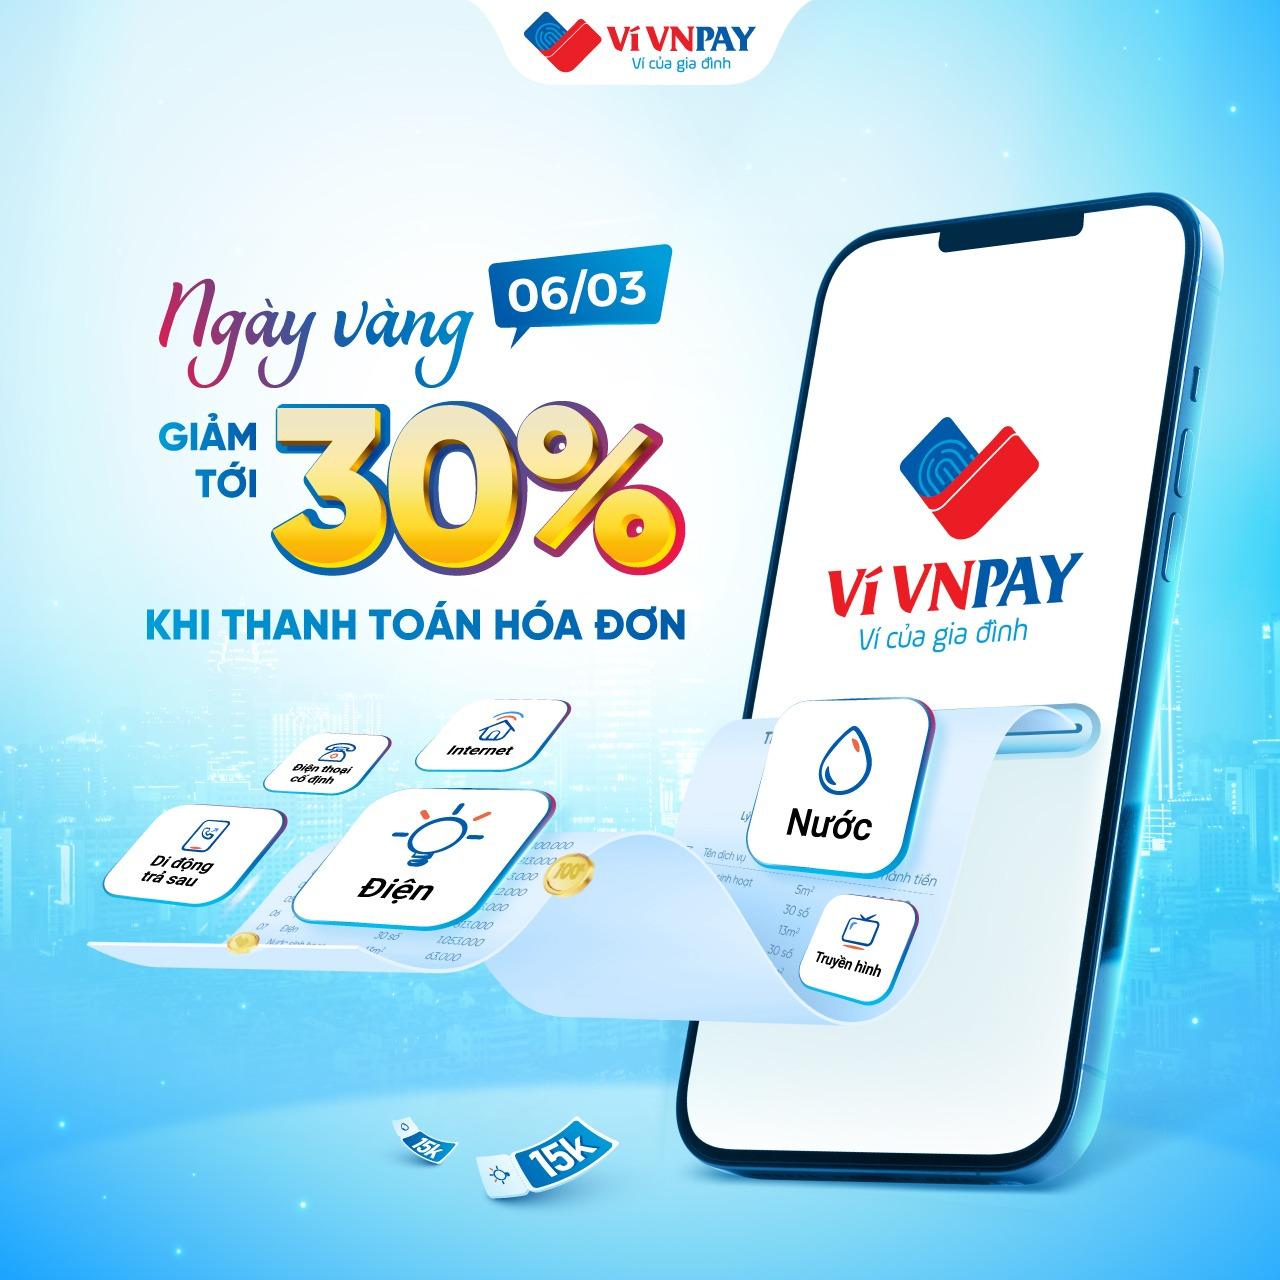 “Thổi bay” hóa đơn với ưu đãi lên tới 30% khi thanh toán trên ví VNPAY